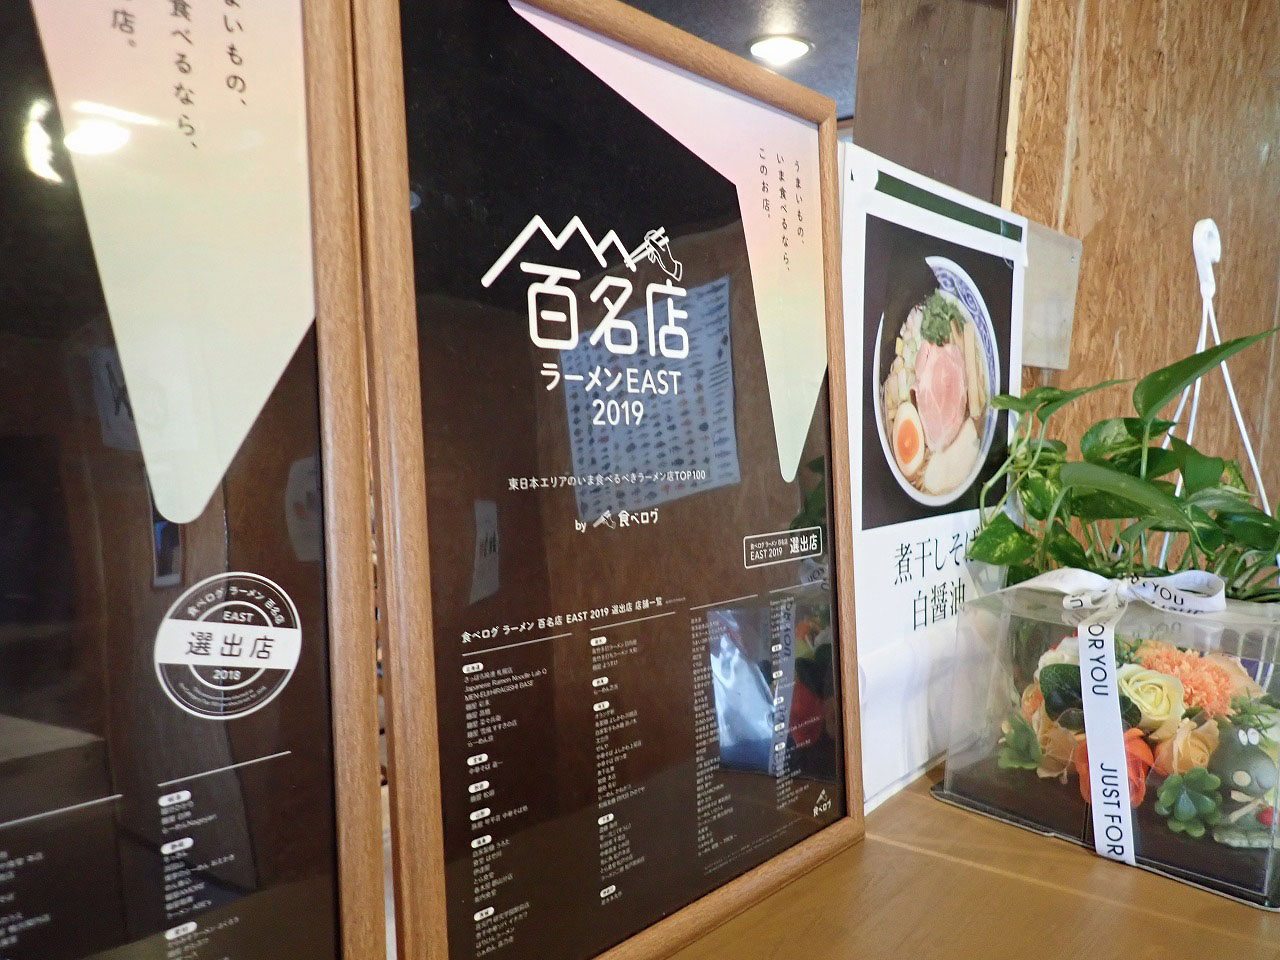 『寿製麺よしかわ』の店内に展示されている「ラーメン 百名店 EAST　2019」の案内